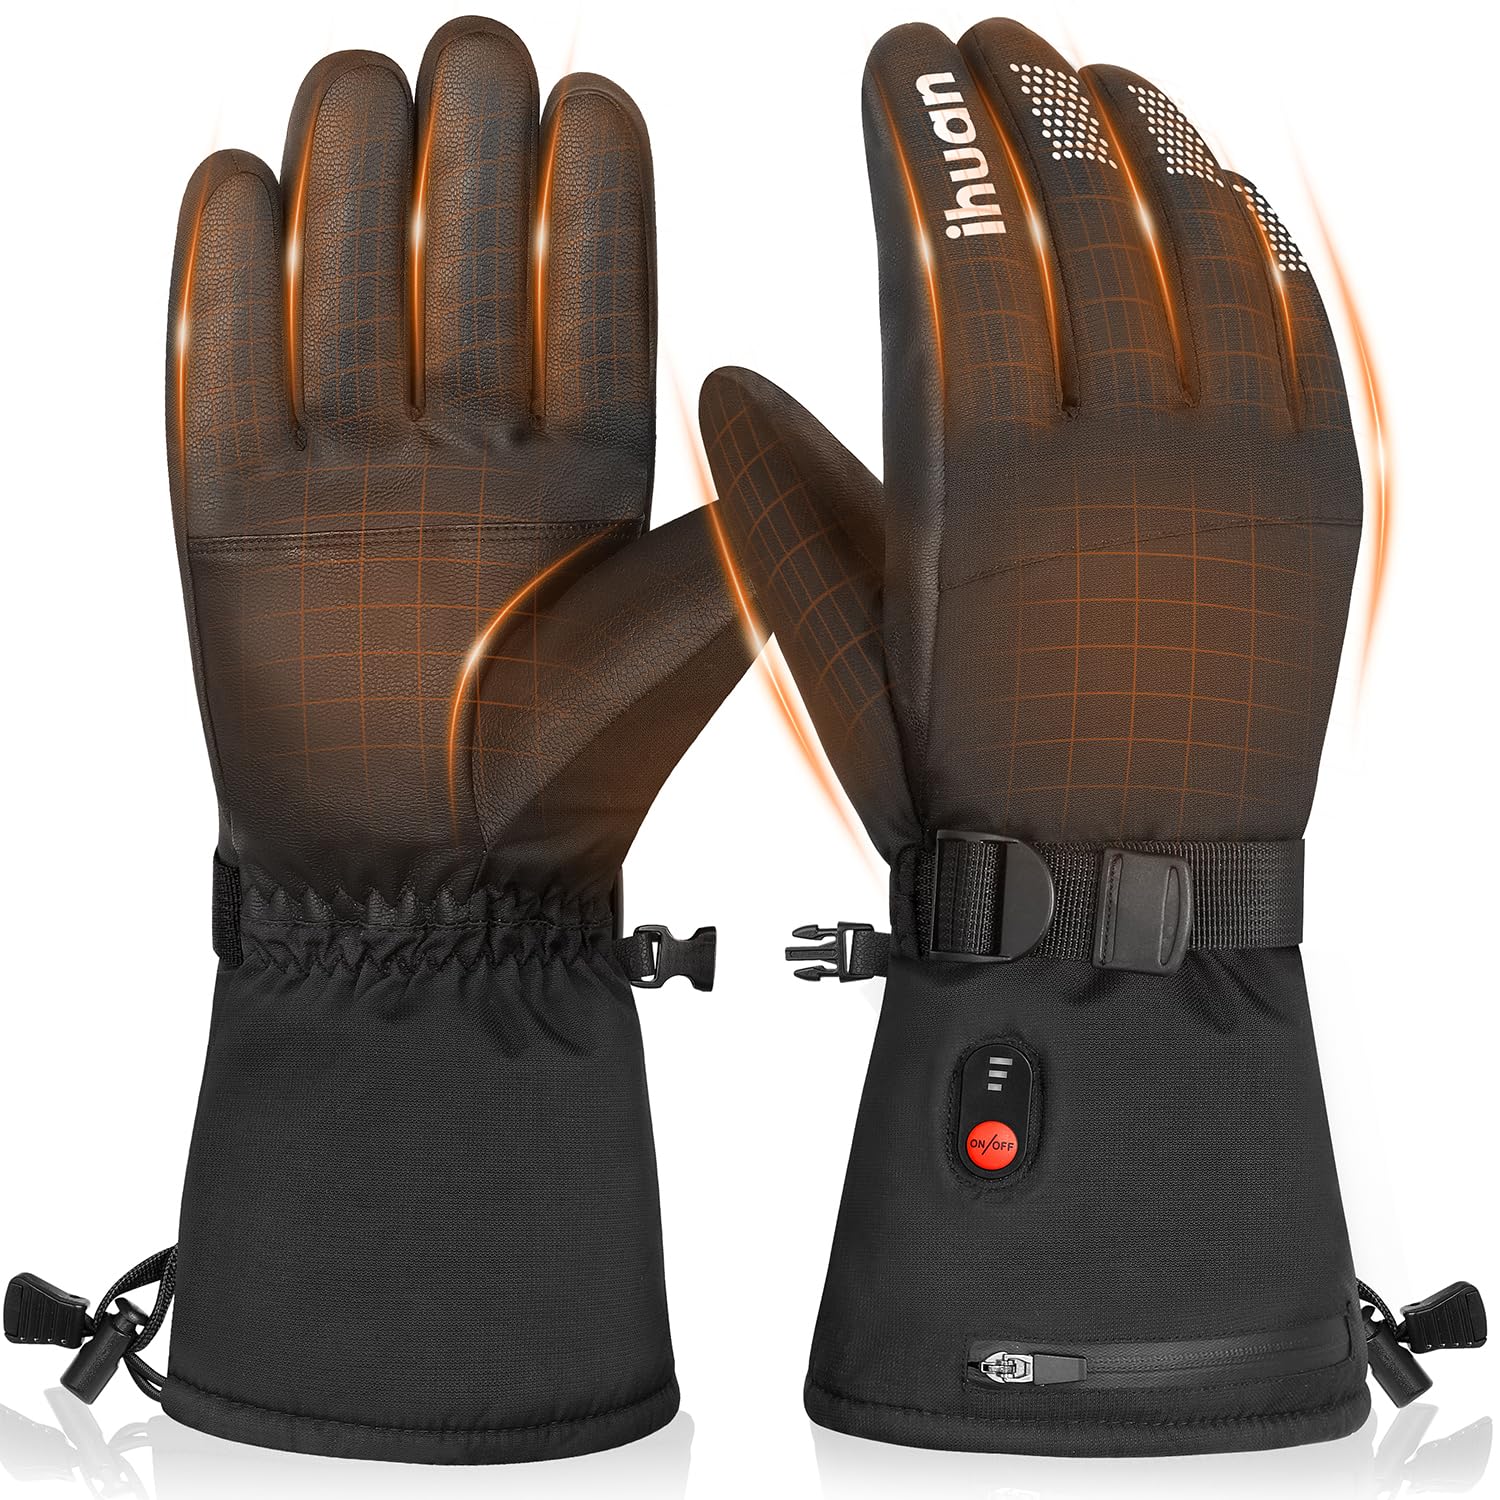 Waterproof Heated Gloves for Men Women